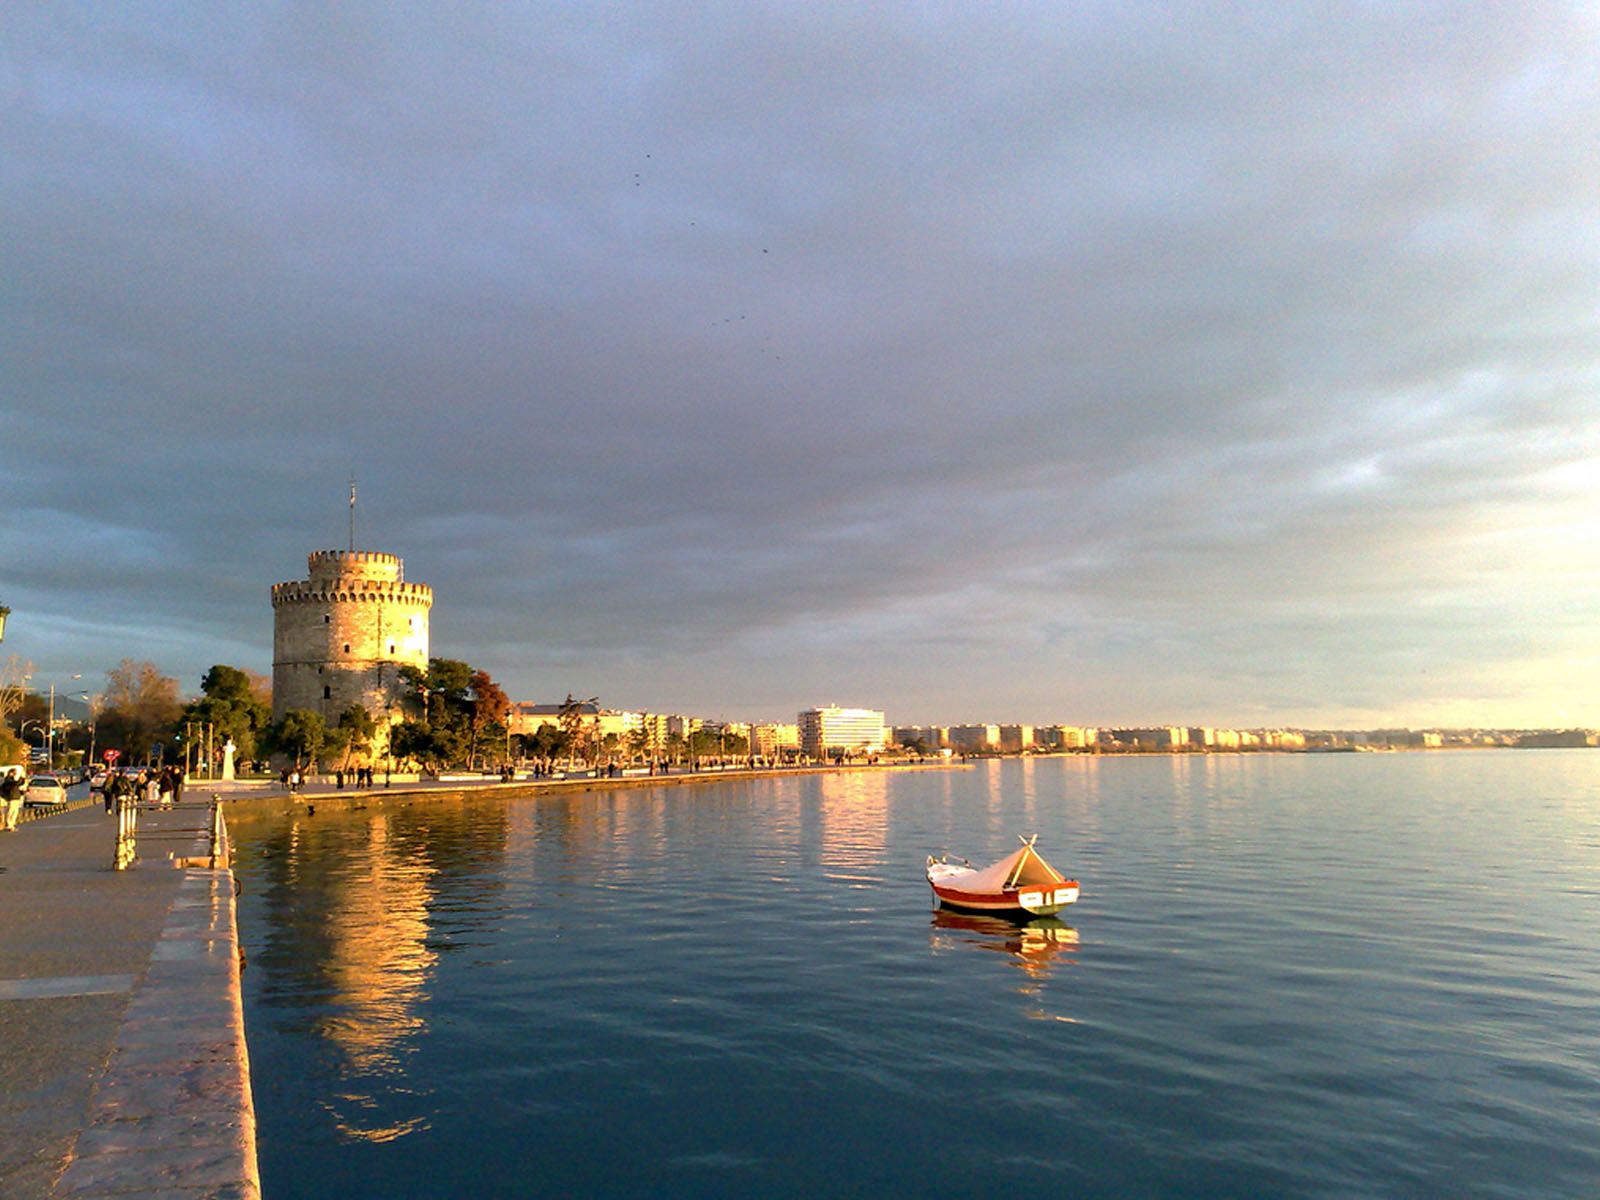 Με ποιο μέσο συμφέρει το ταξίδι για τη Θεσσαλονίκη-Παραδείγματα